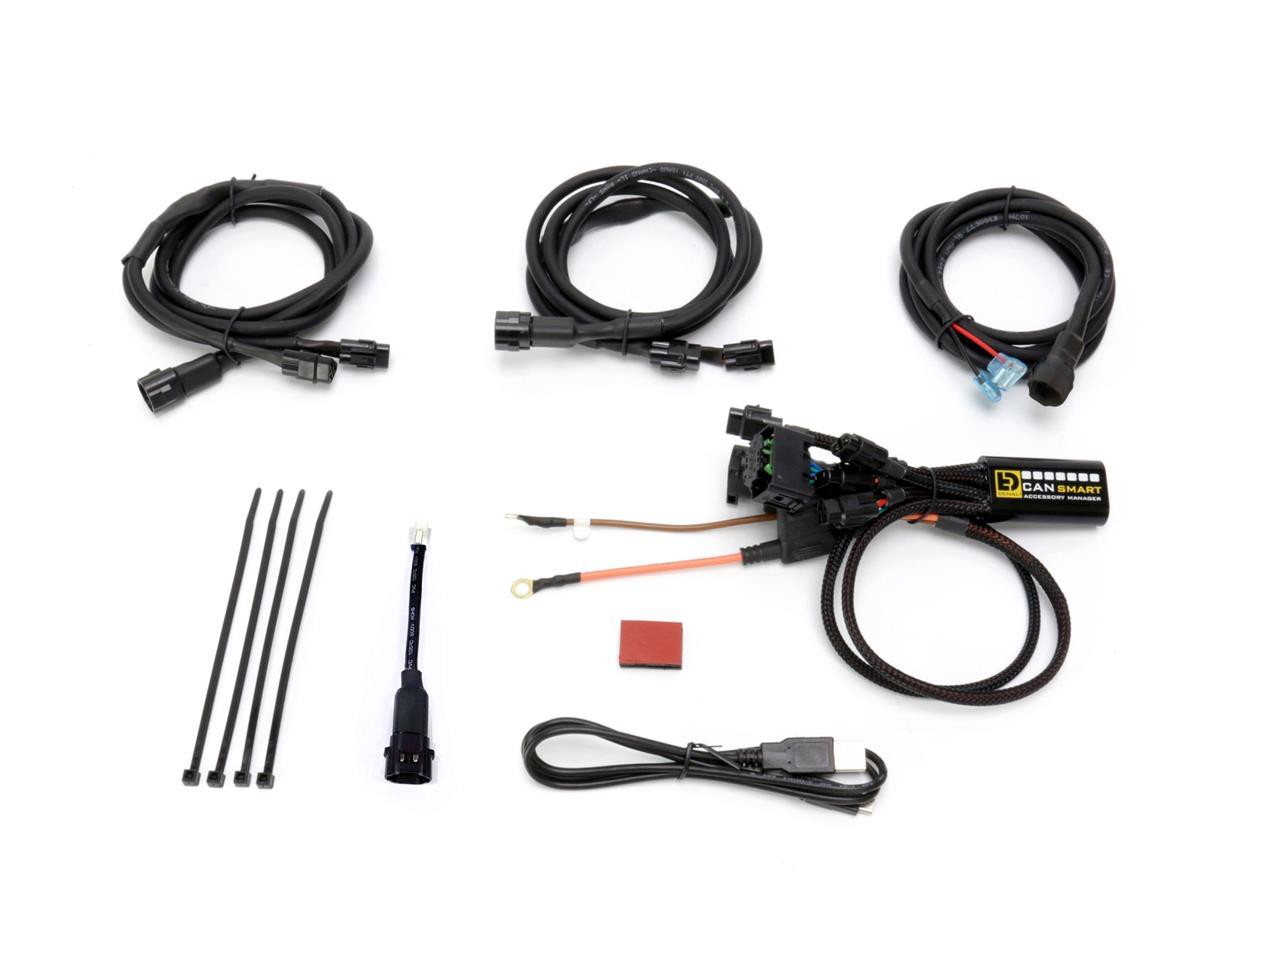 Faisceau CANSMART Plug-N-Play GEN II pour Feux Additionnel BMW R 1200 GS Adventure (06-13)